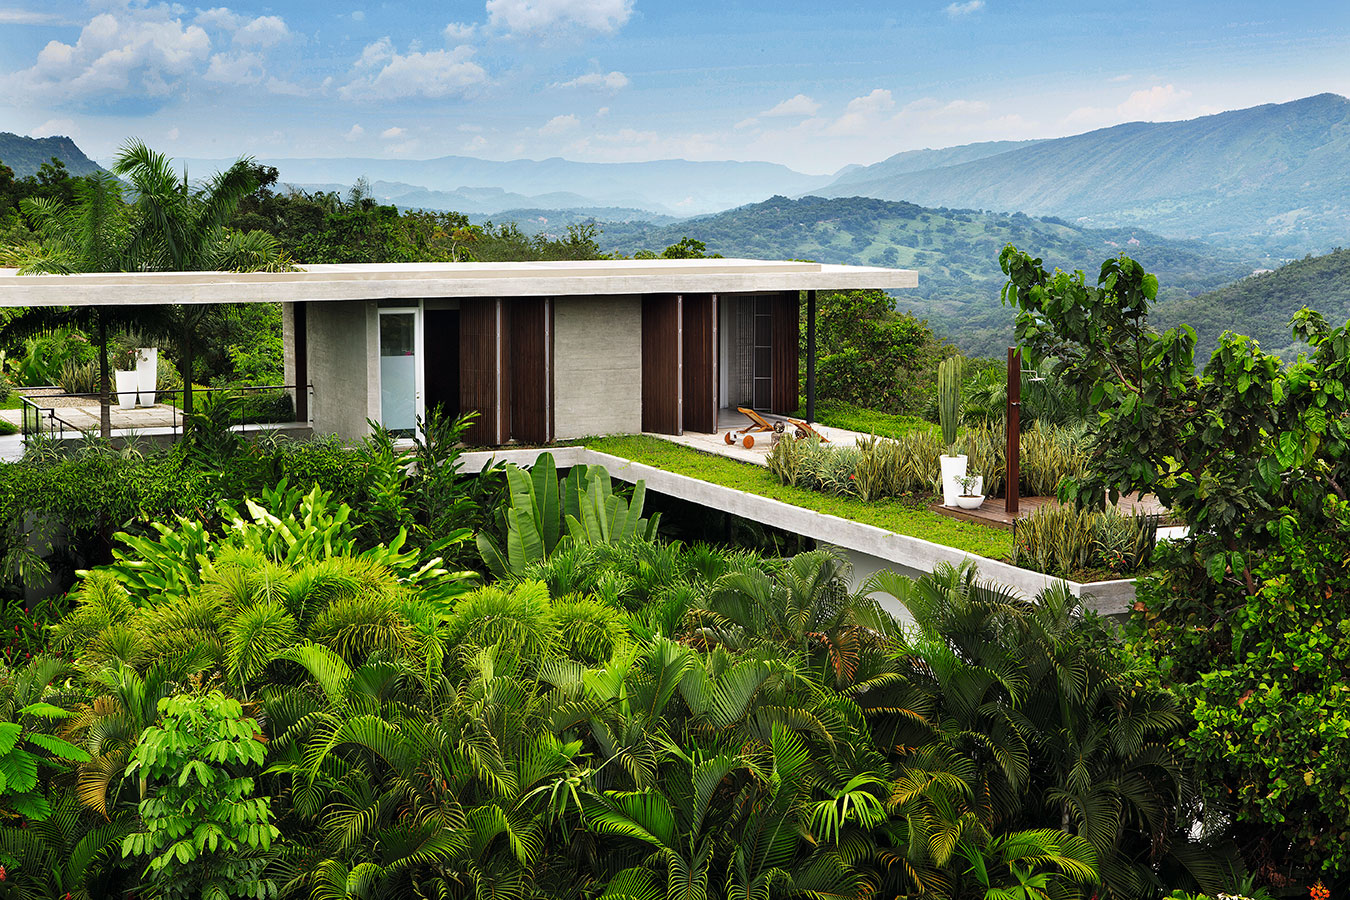 racionalismo tropical arquitectura de concreto y madera 4 1 Racionalismo tropical: arquitectura de concreto y madera en una tierra cálida colombiana